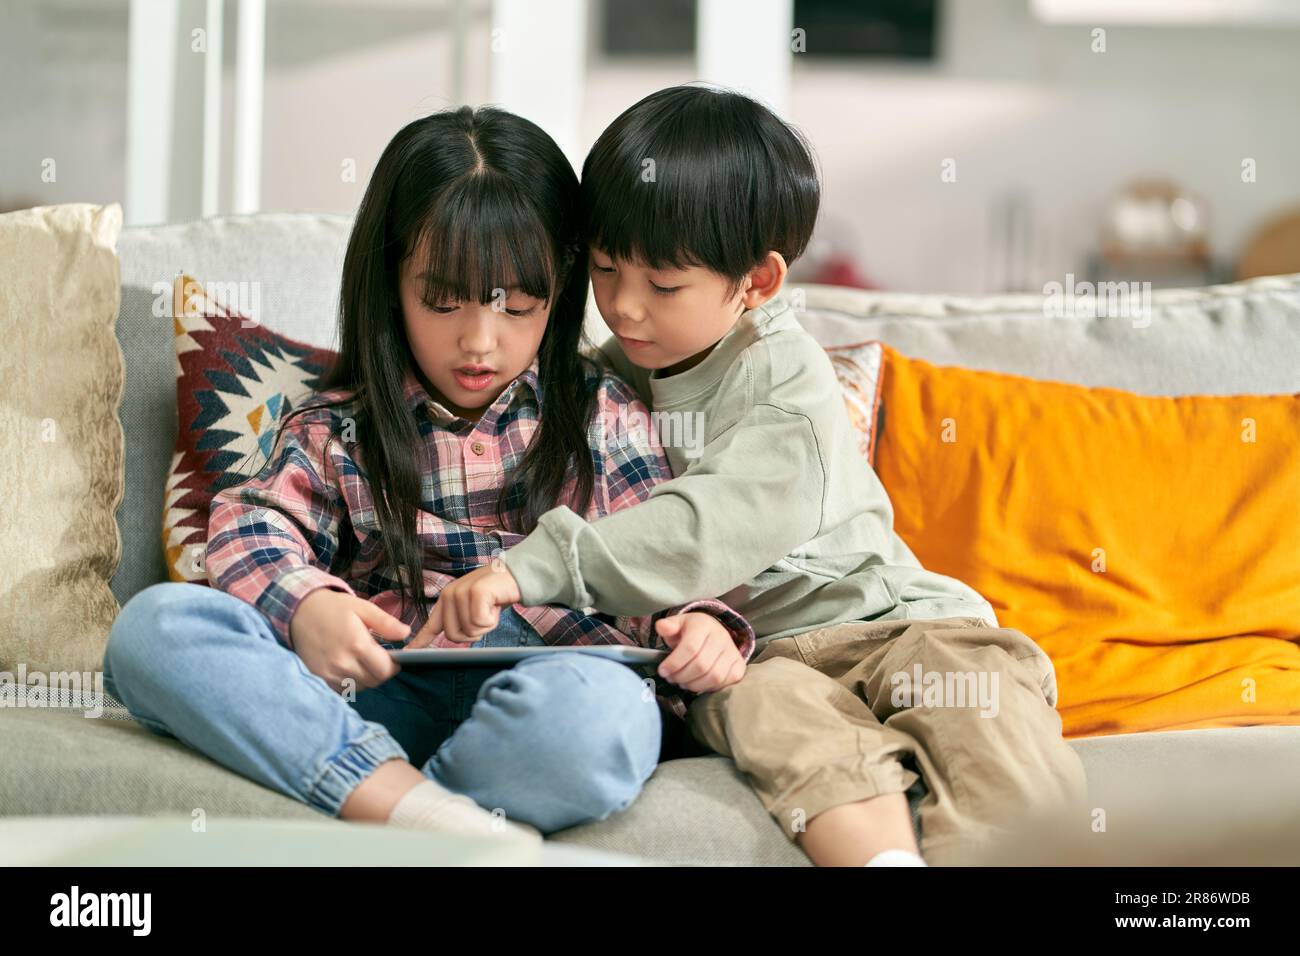 deux enfants asiatiques frère et soeur assis sur un canapé de famille à la maison jouant à un jeu d'ordinateur à l'aide d'une tablette numérique Banque D'Images